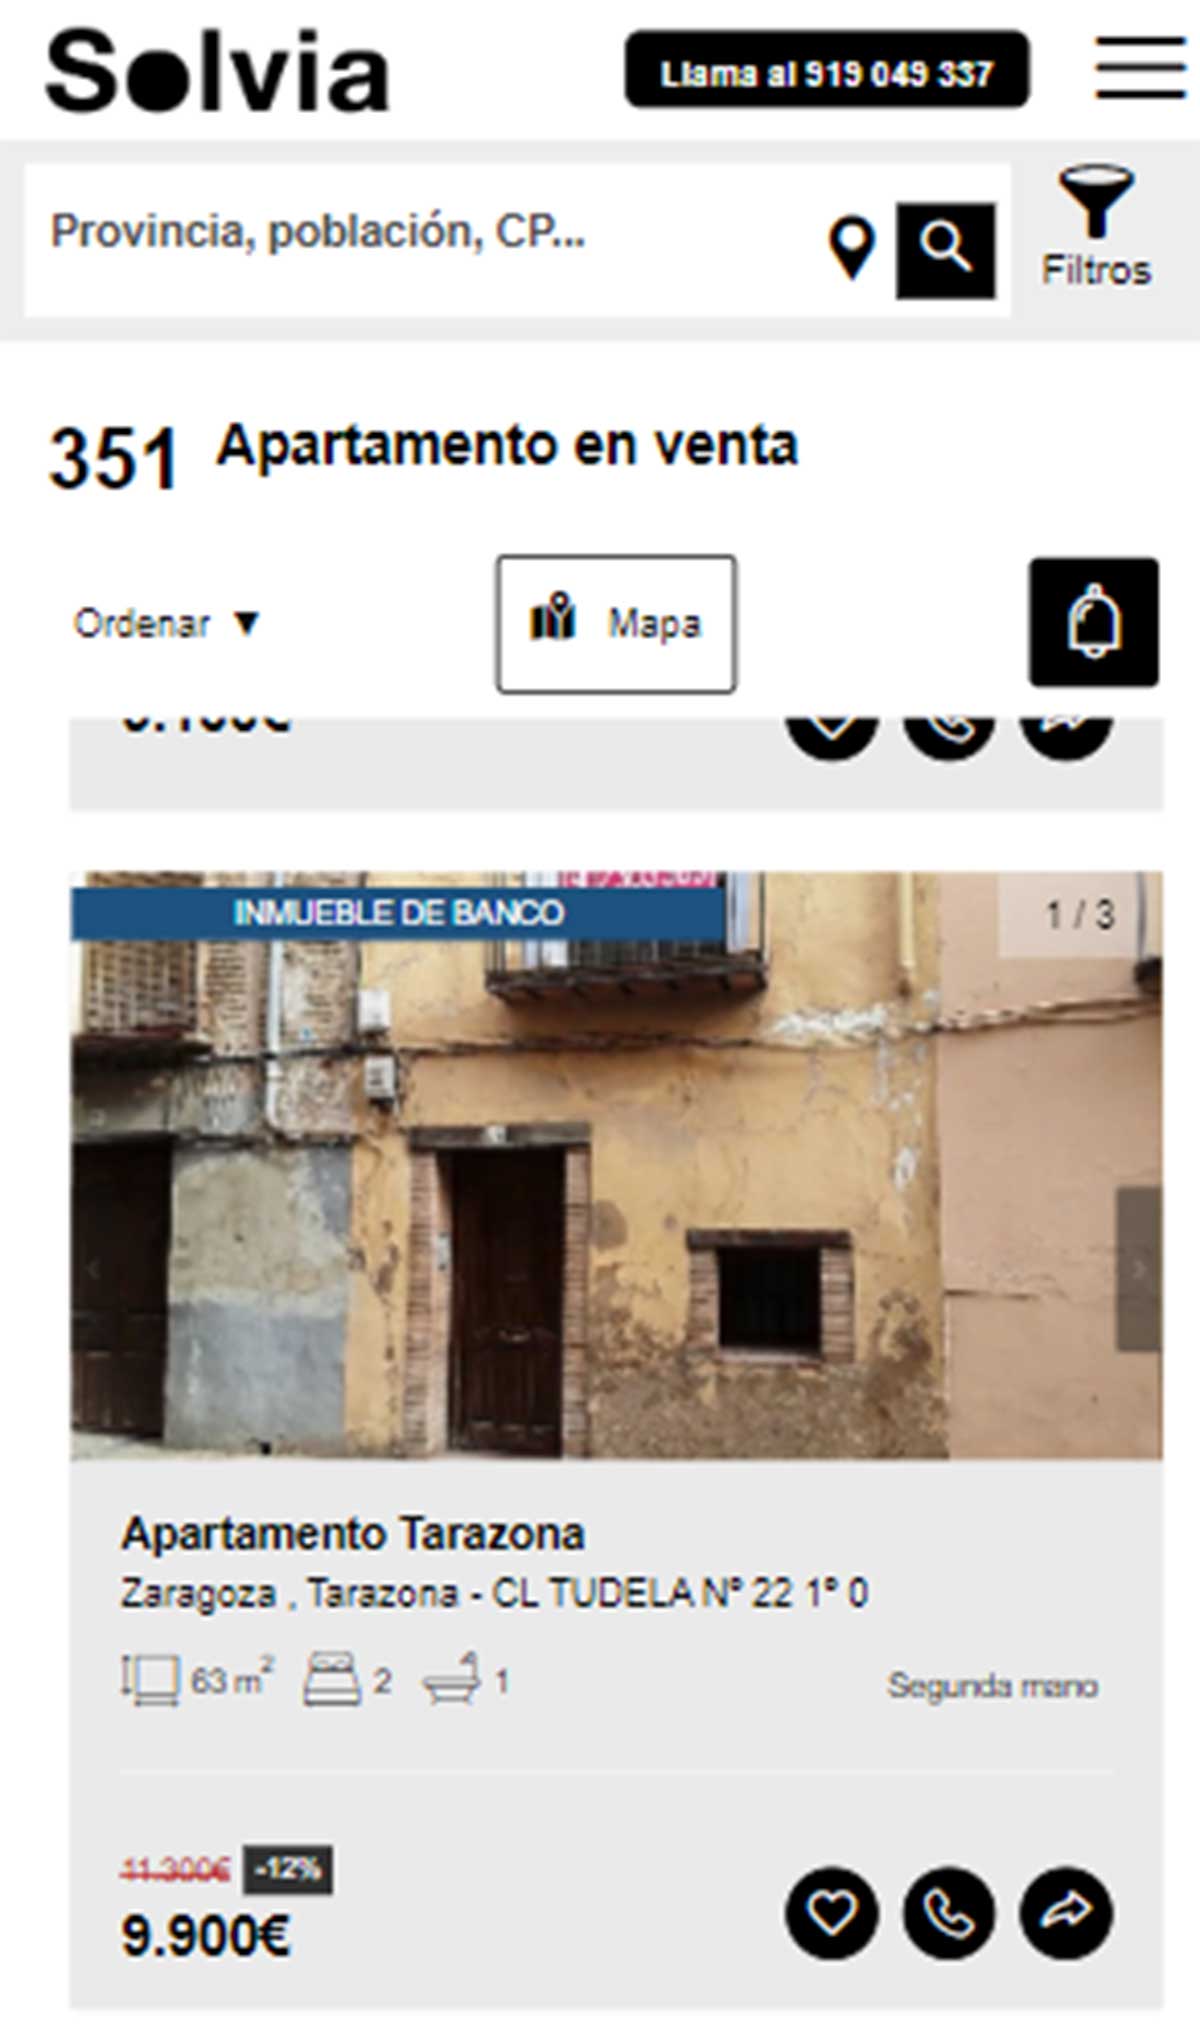 Apartamento a la venta por 9.000 euros